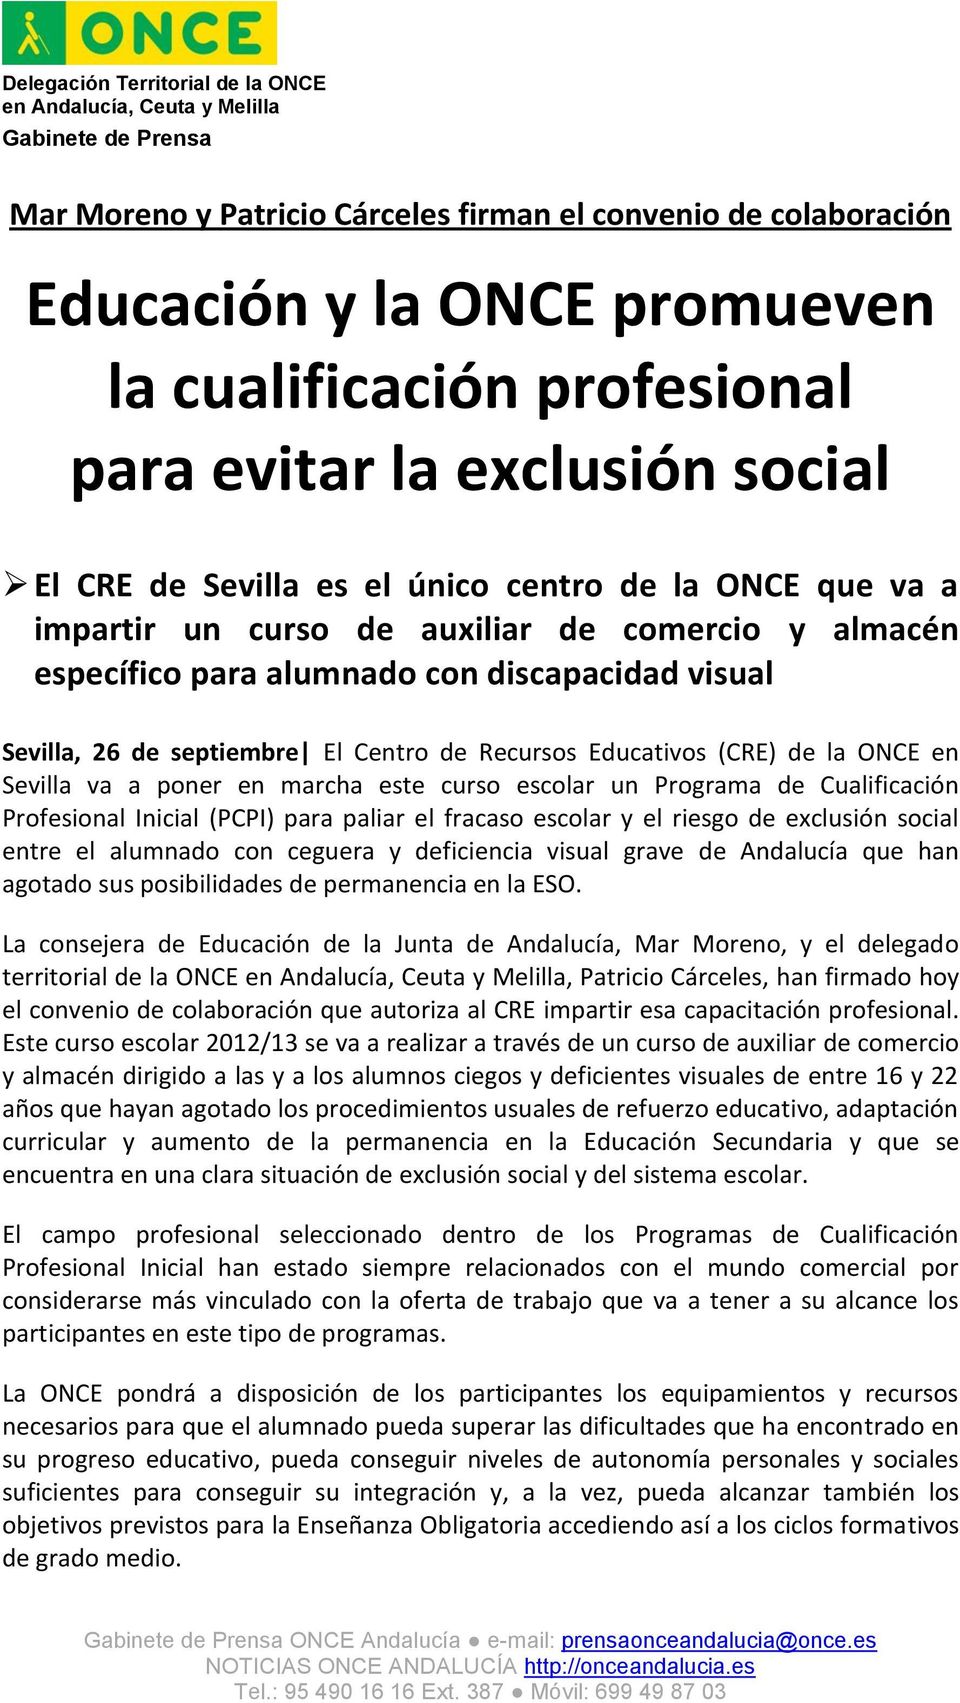 Sevilla va a poner en marcha este curso escolar un Programa de Cualificación Profesional Inicial (PCPI) para paliar el fracaso escolar y el riesgo de exclusión social entre el alumnado con ceguera y